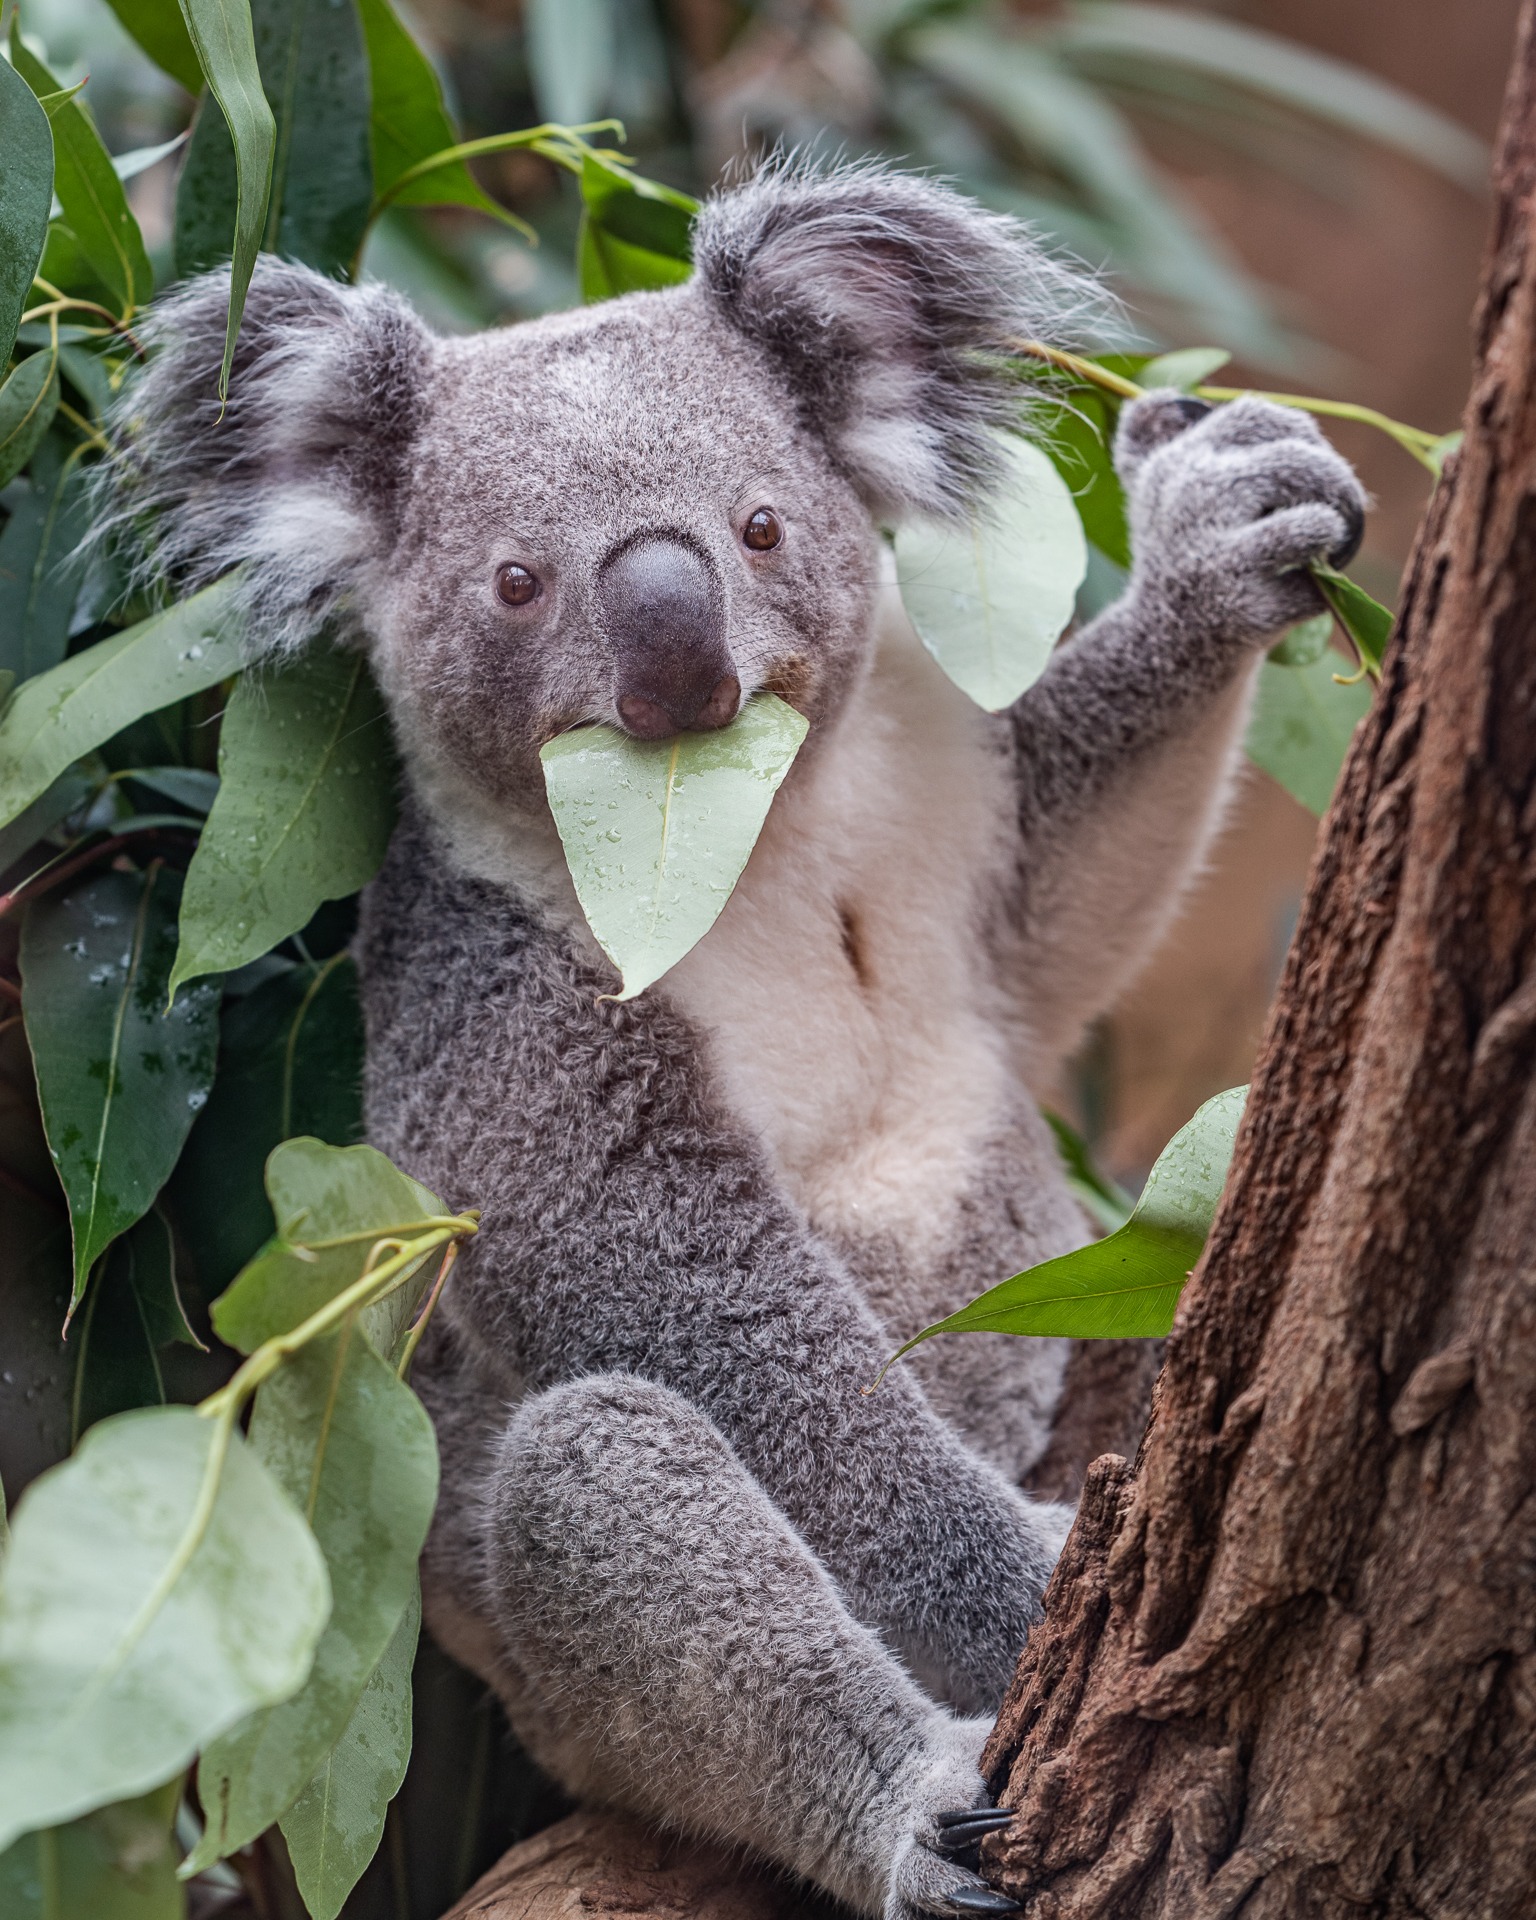 Mehr Koala...

#sony #sonya7riii #ilce7rm3 #sonyphotography #tamron70200mm #photooftheday #nature #naturephotography #zoofotografie #animals #zooanimalsofinstagram #tierpark #zoo #animalphotography #zooanimal #zoopark #zoophoto #fotografie #zooduisburg #duisburg #tierfotografie #naturliebe #tierliebe #einhesseunterwegs #kurztrip #koala